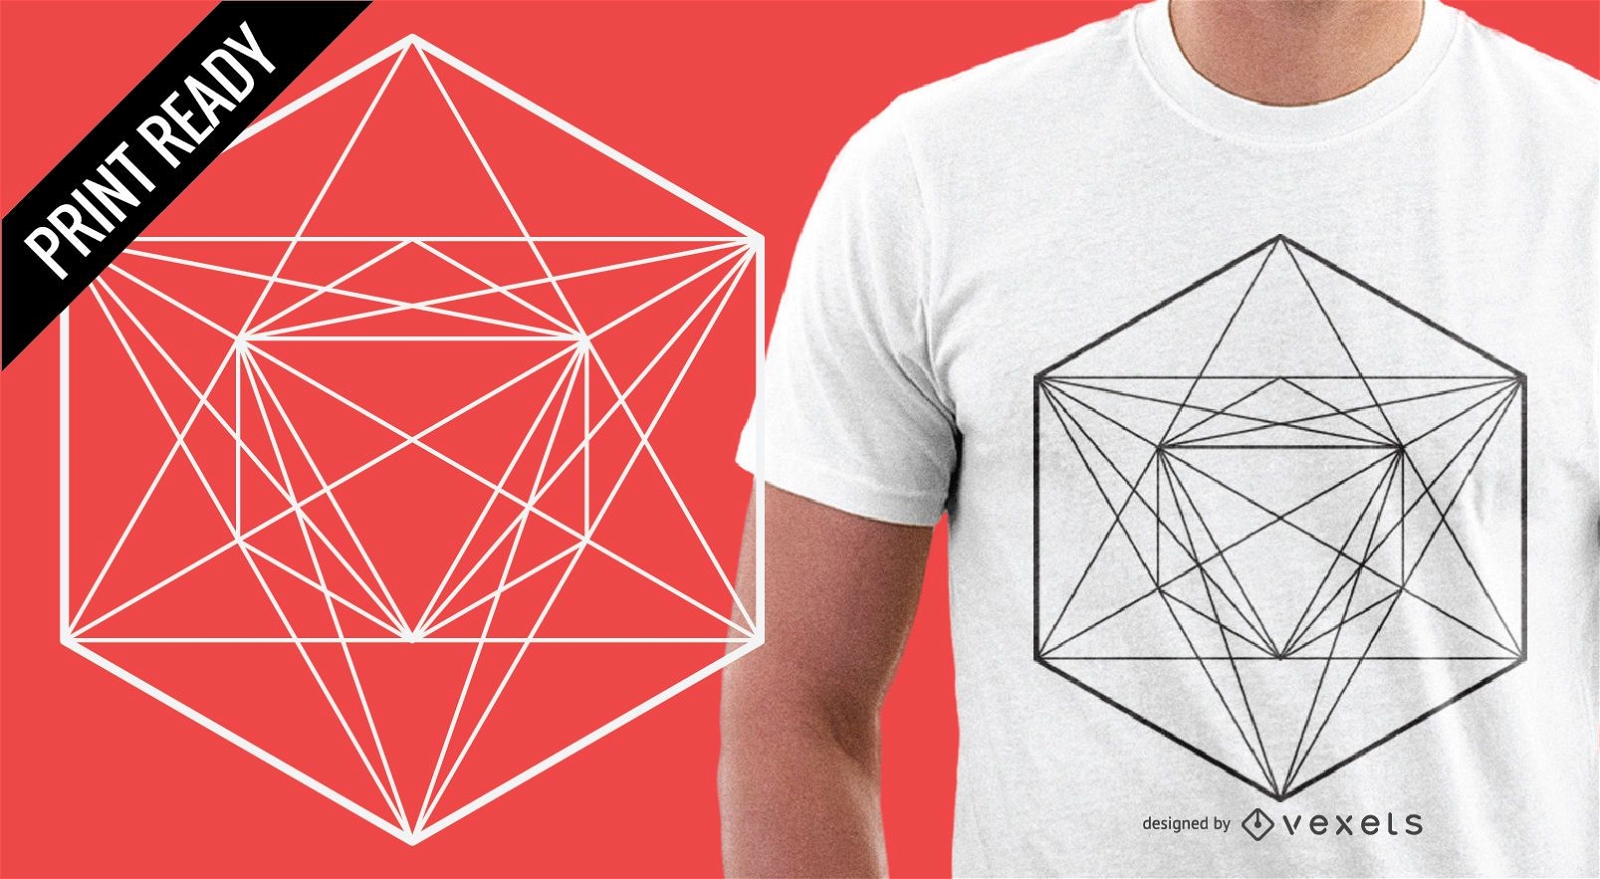 Geometria sagrada para o design de uma camiseta